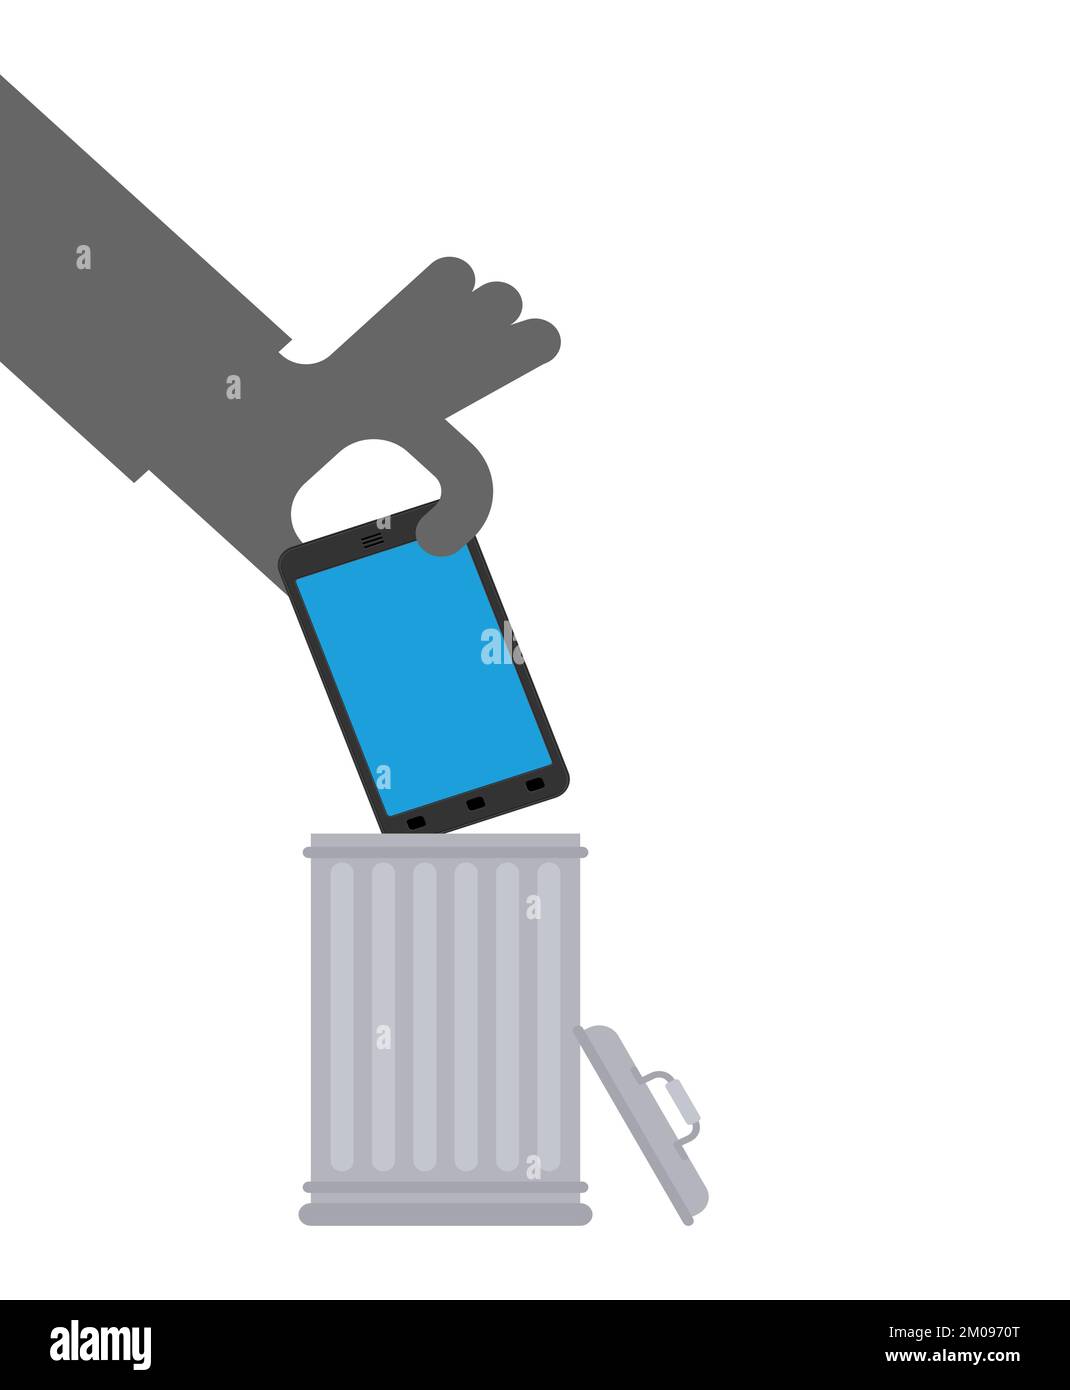 Wirf dein Smartphone in den Müll. Die Hand wirft das Telefon in den Mülleimer. Stock Vektor